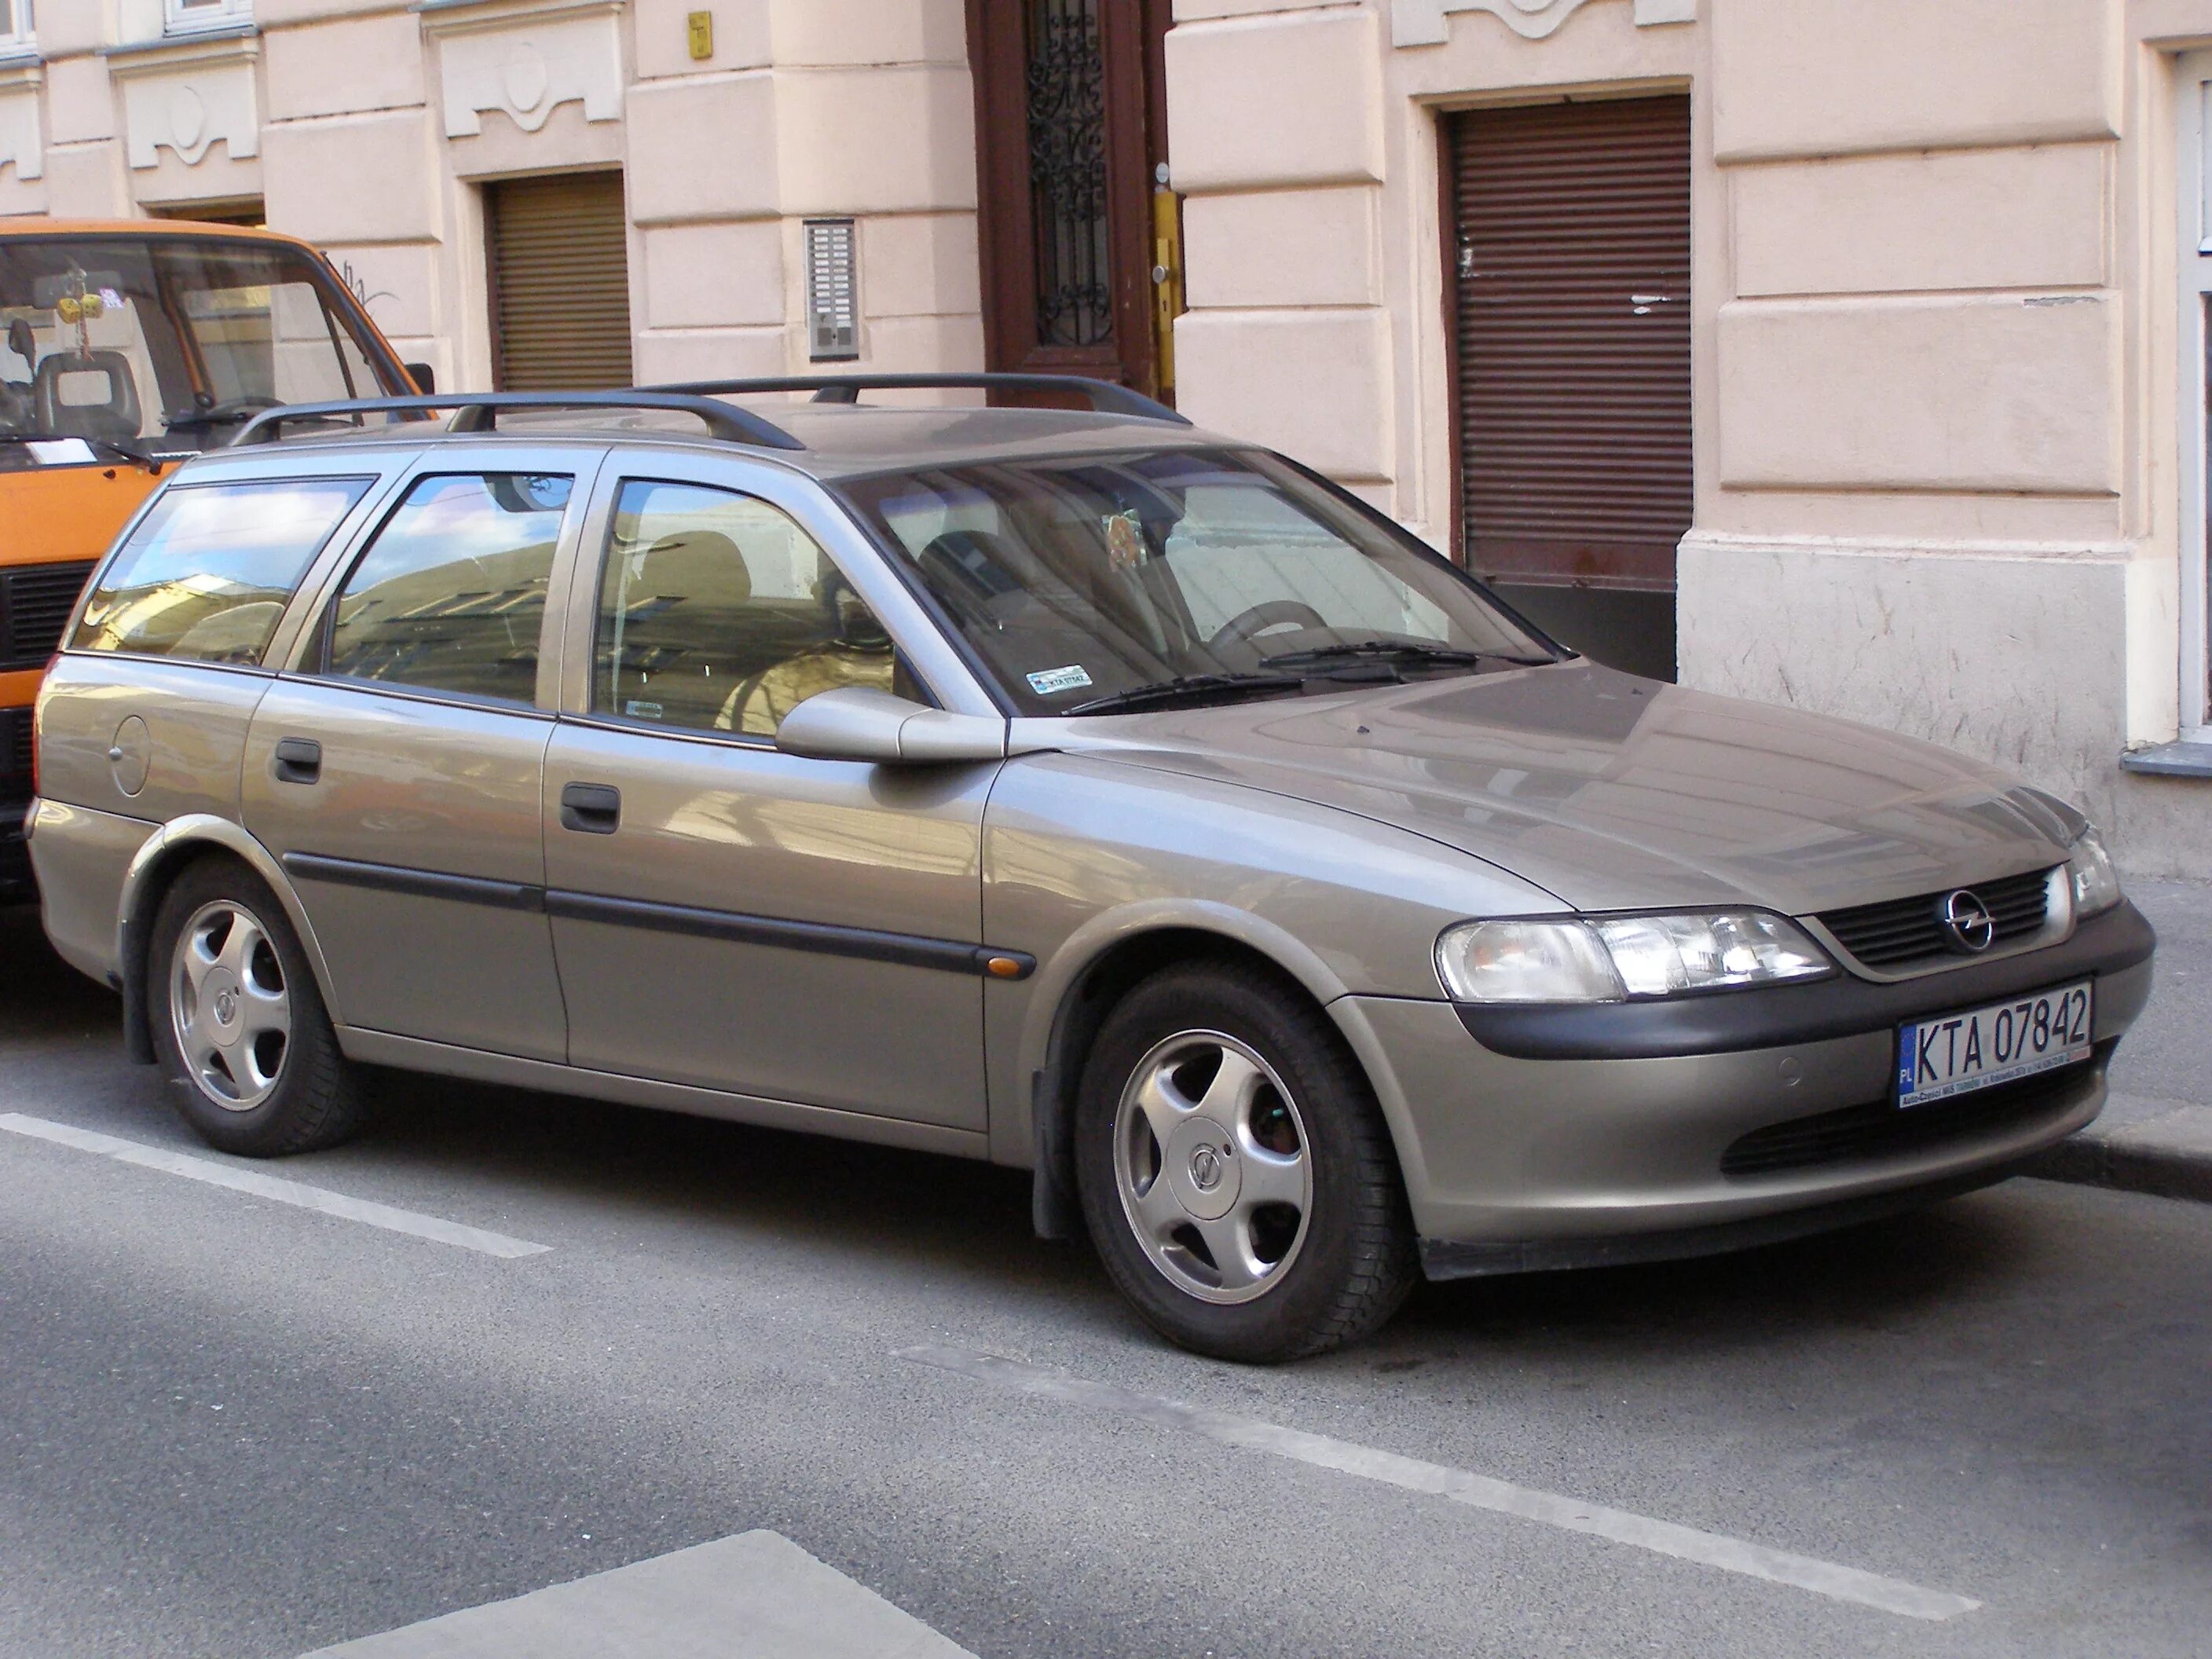 Opel Vectra Caravan 1997. Opel Vectra Caravan 1998. Opel Vectra b 1998 универсал. Opel Vectra Caravan 2000. Опель вектра караван